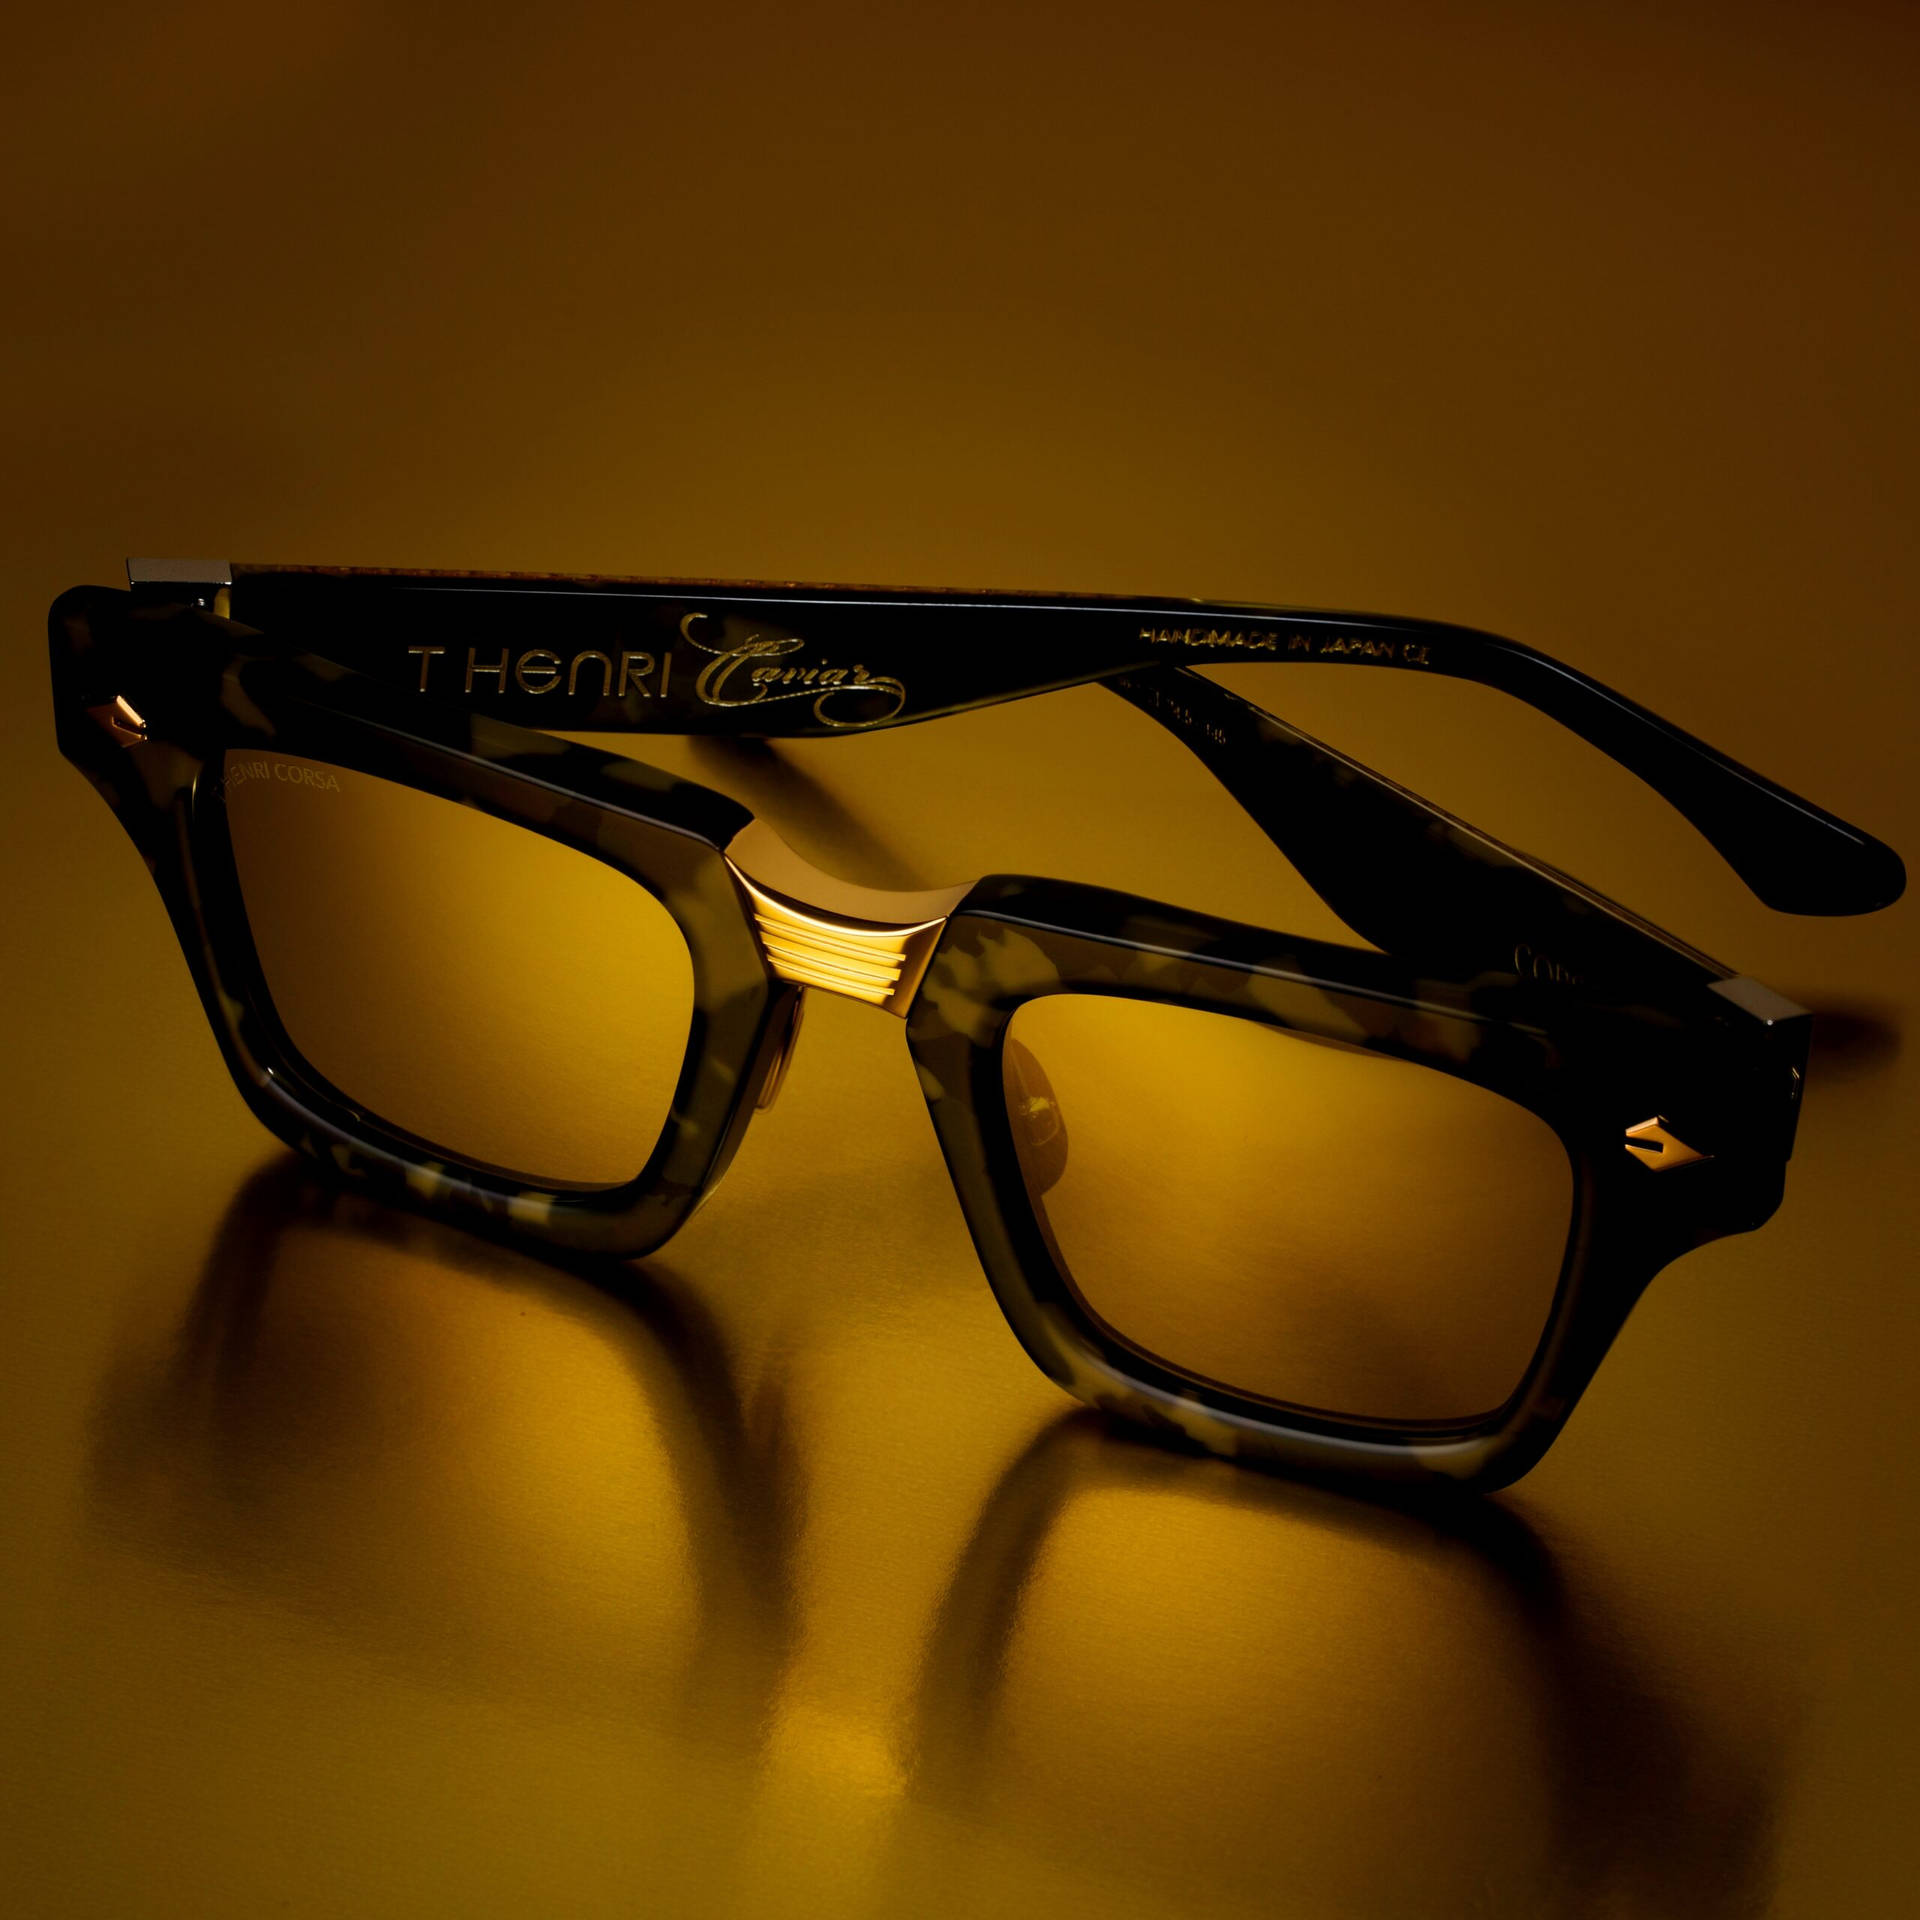 T Henri Caviar Glasses Picture